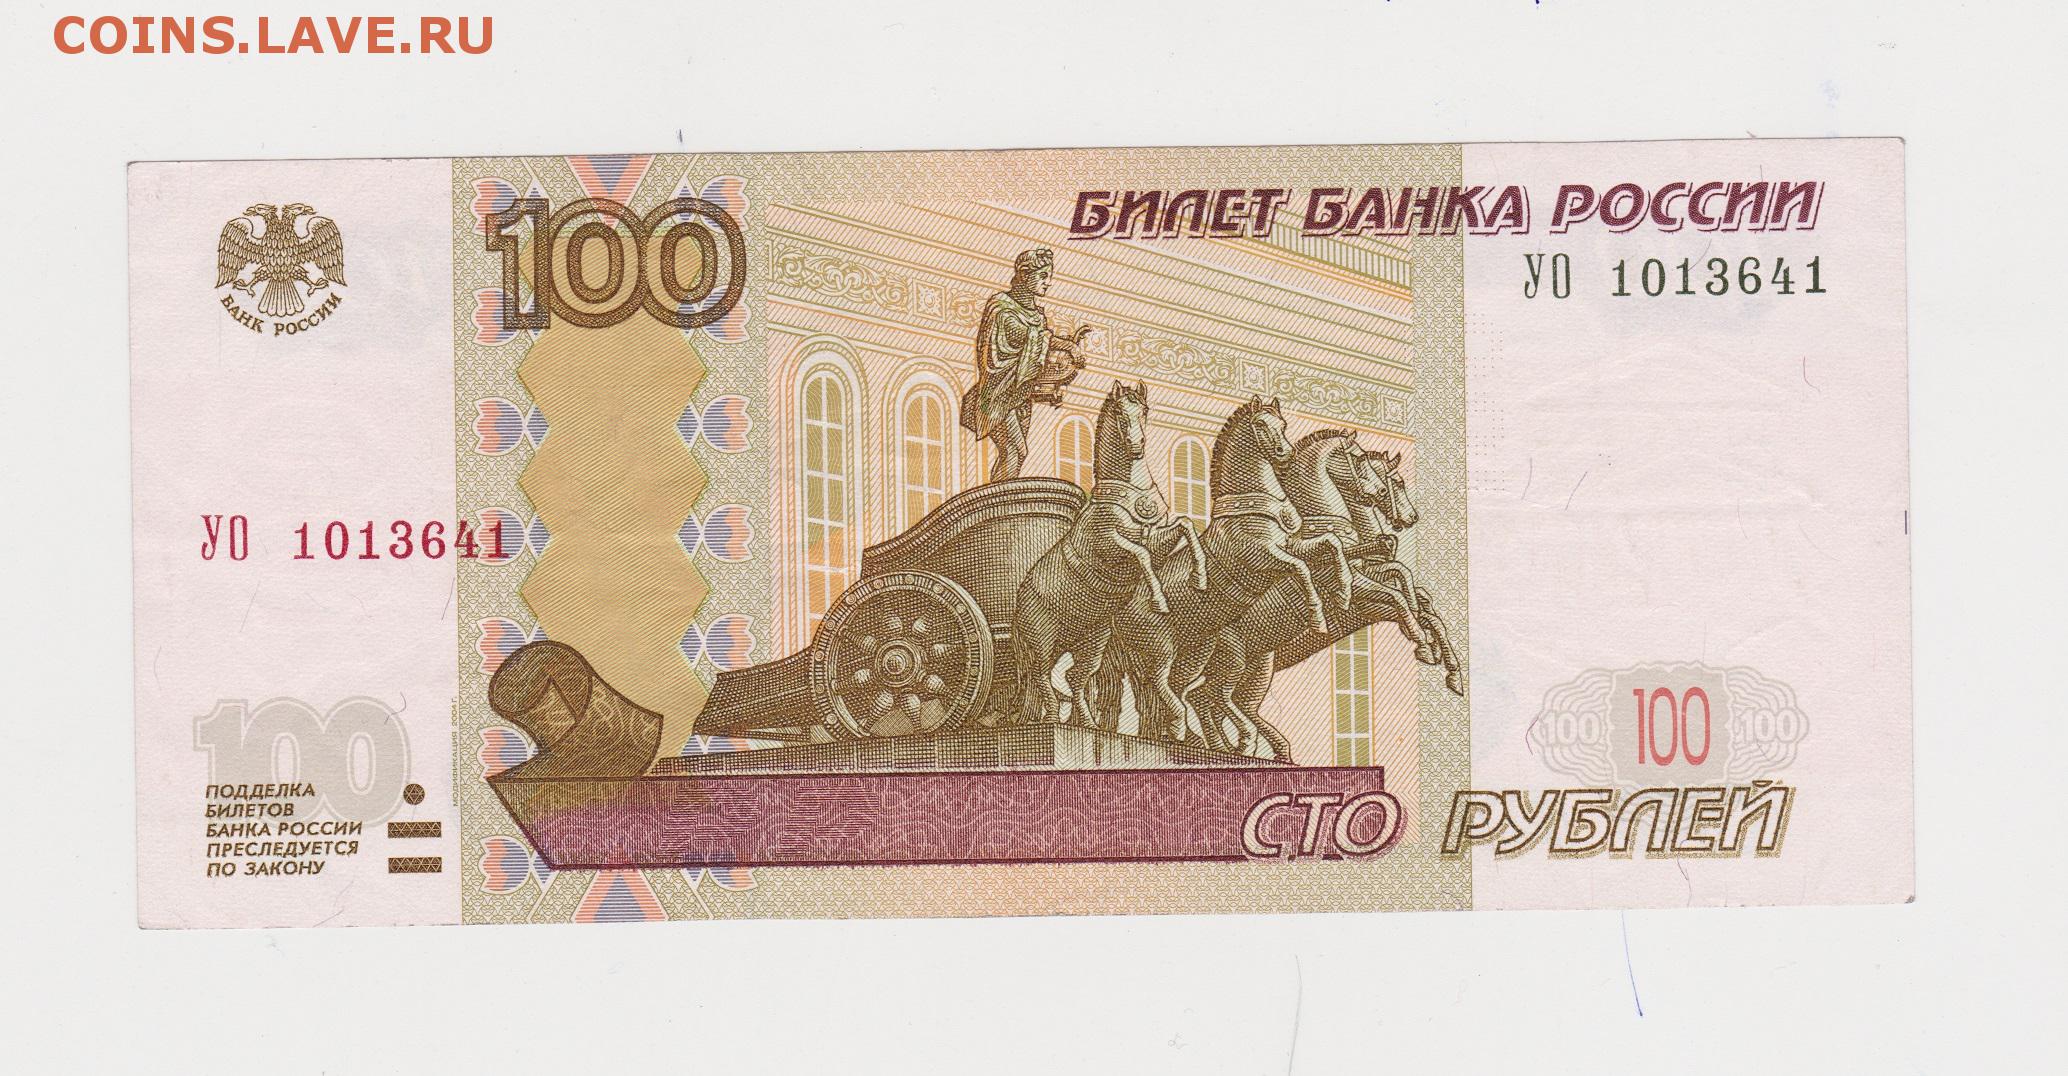 Четыре сто рублей